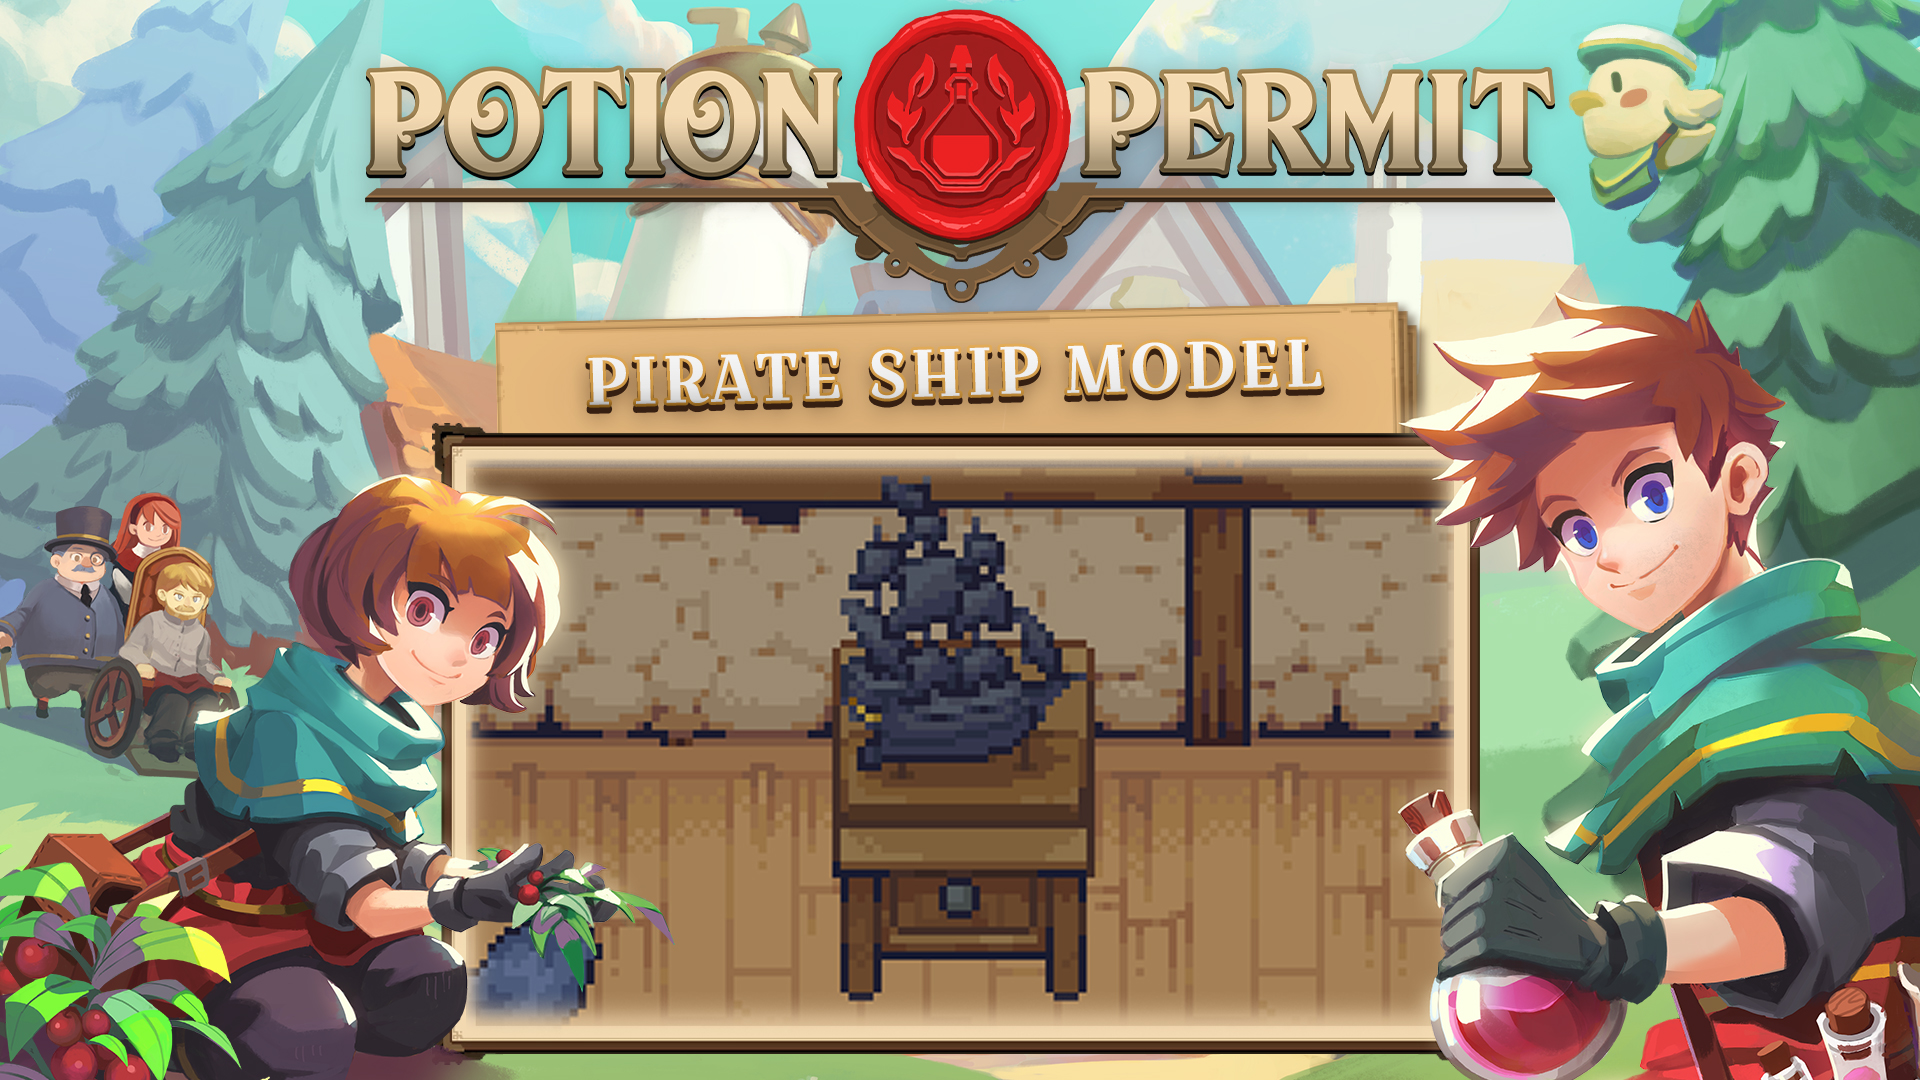 Potion Permit - Pirate Ship Model